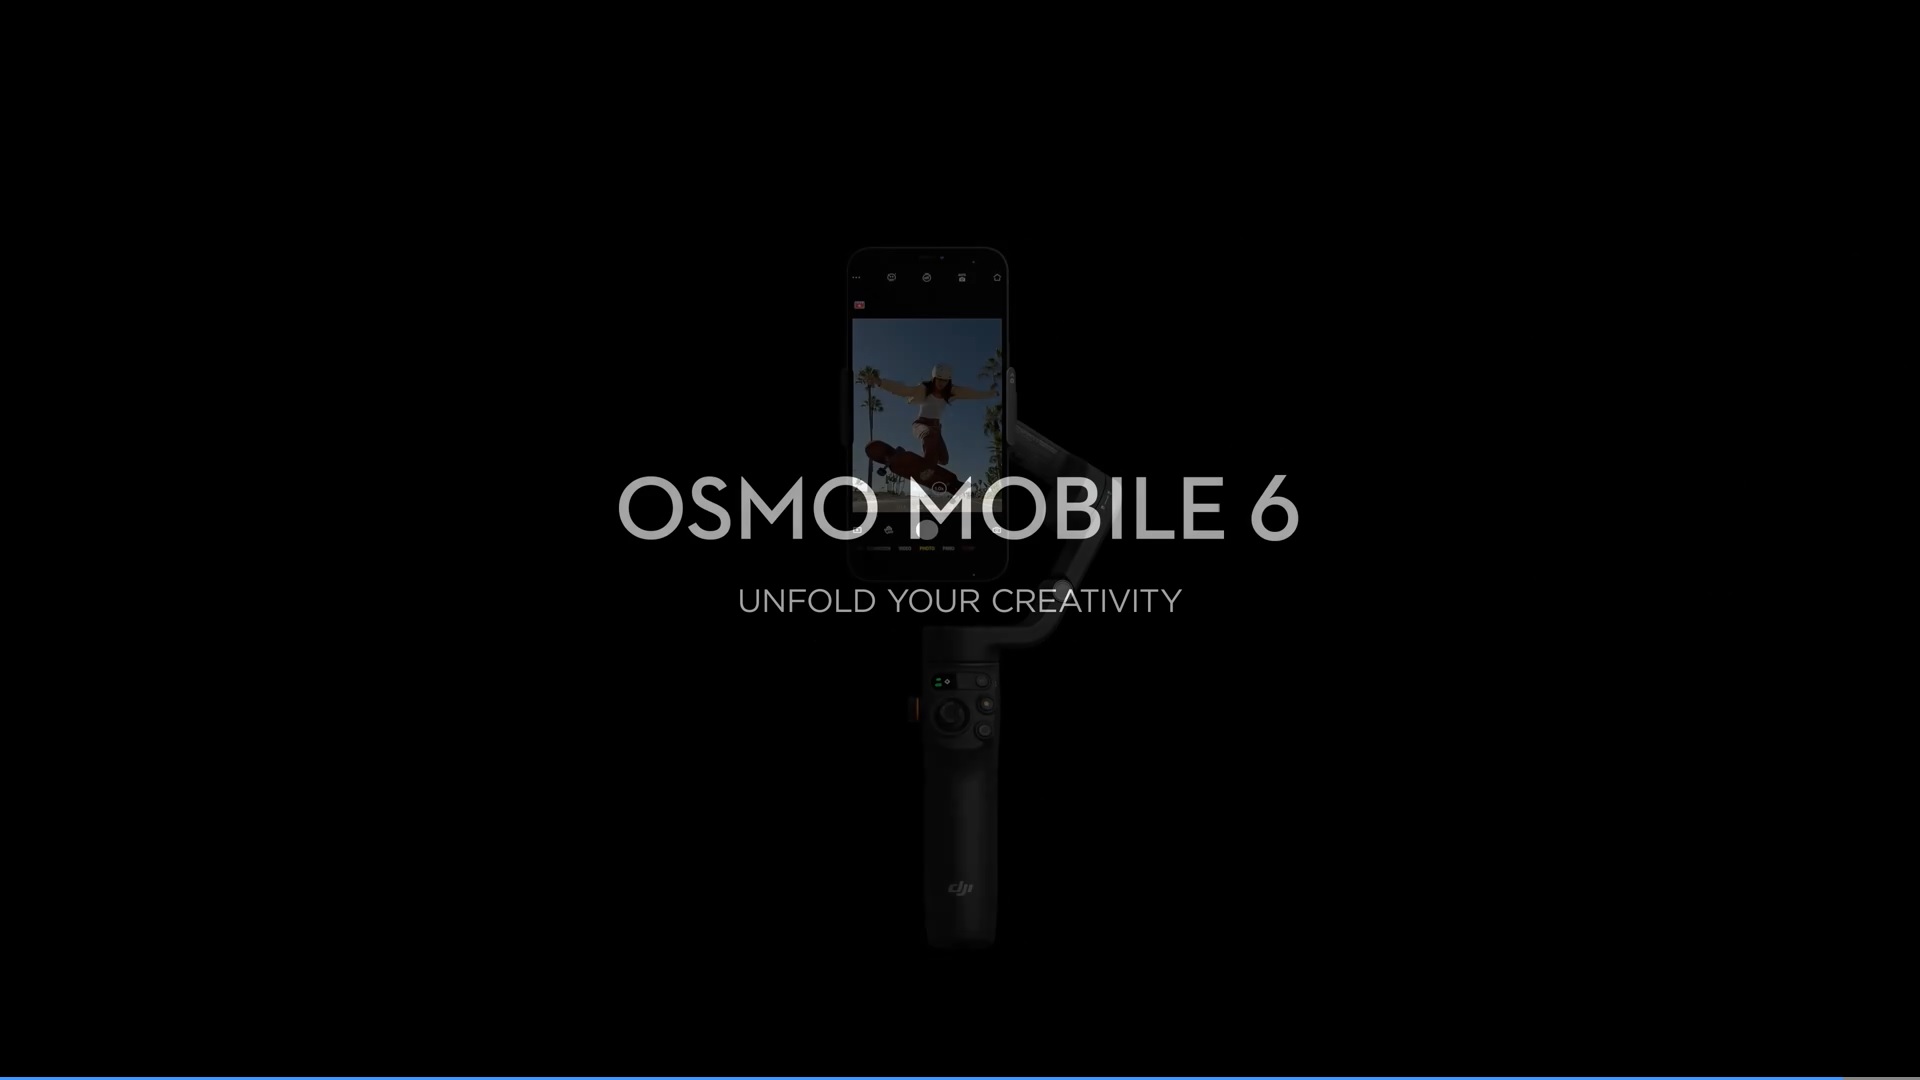 DJI Osmo Mobile 6 gimbal